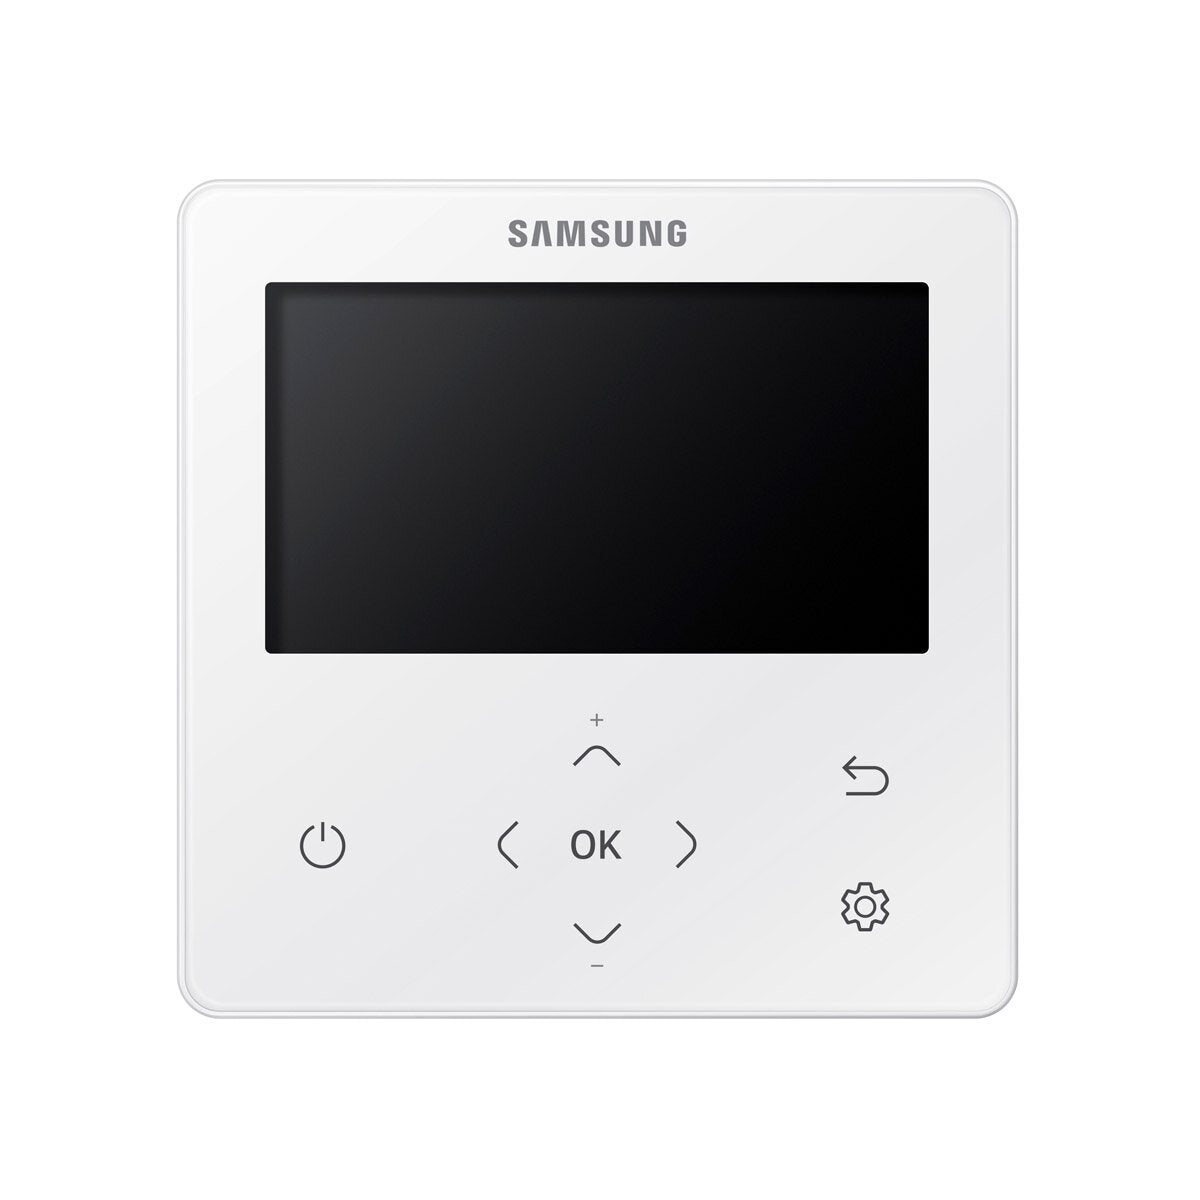 Samsung Climatiseur Cassette WindFree 1 Way penta split 9000 + 12000 + 12000 + 12000 + 12000 BTU inverter A++ unité extérieure 10.0 kW